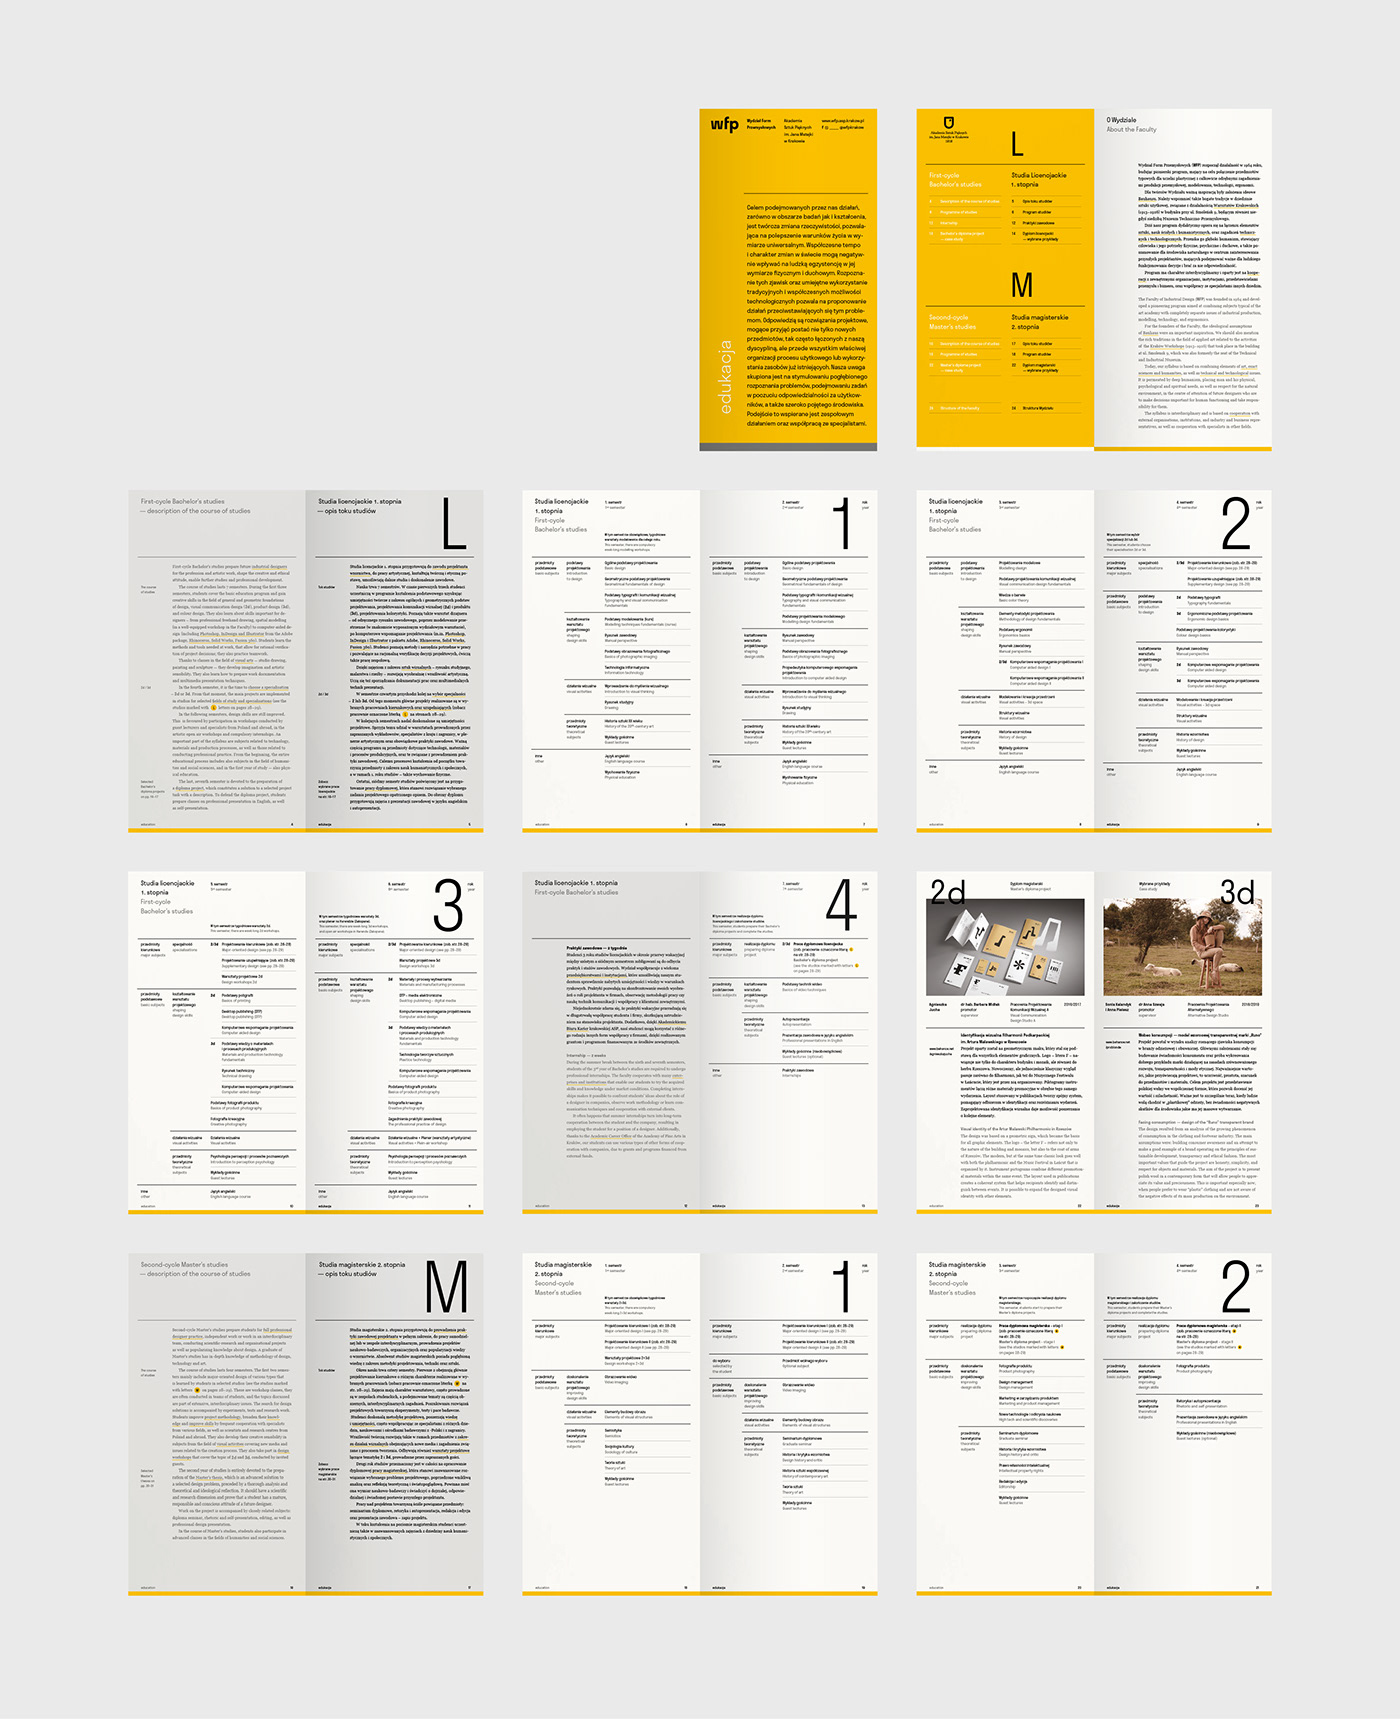 工业设计学院(WFP)宣传册设计